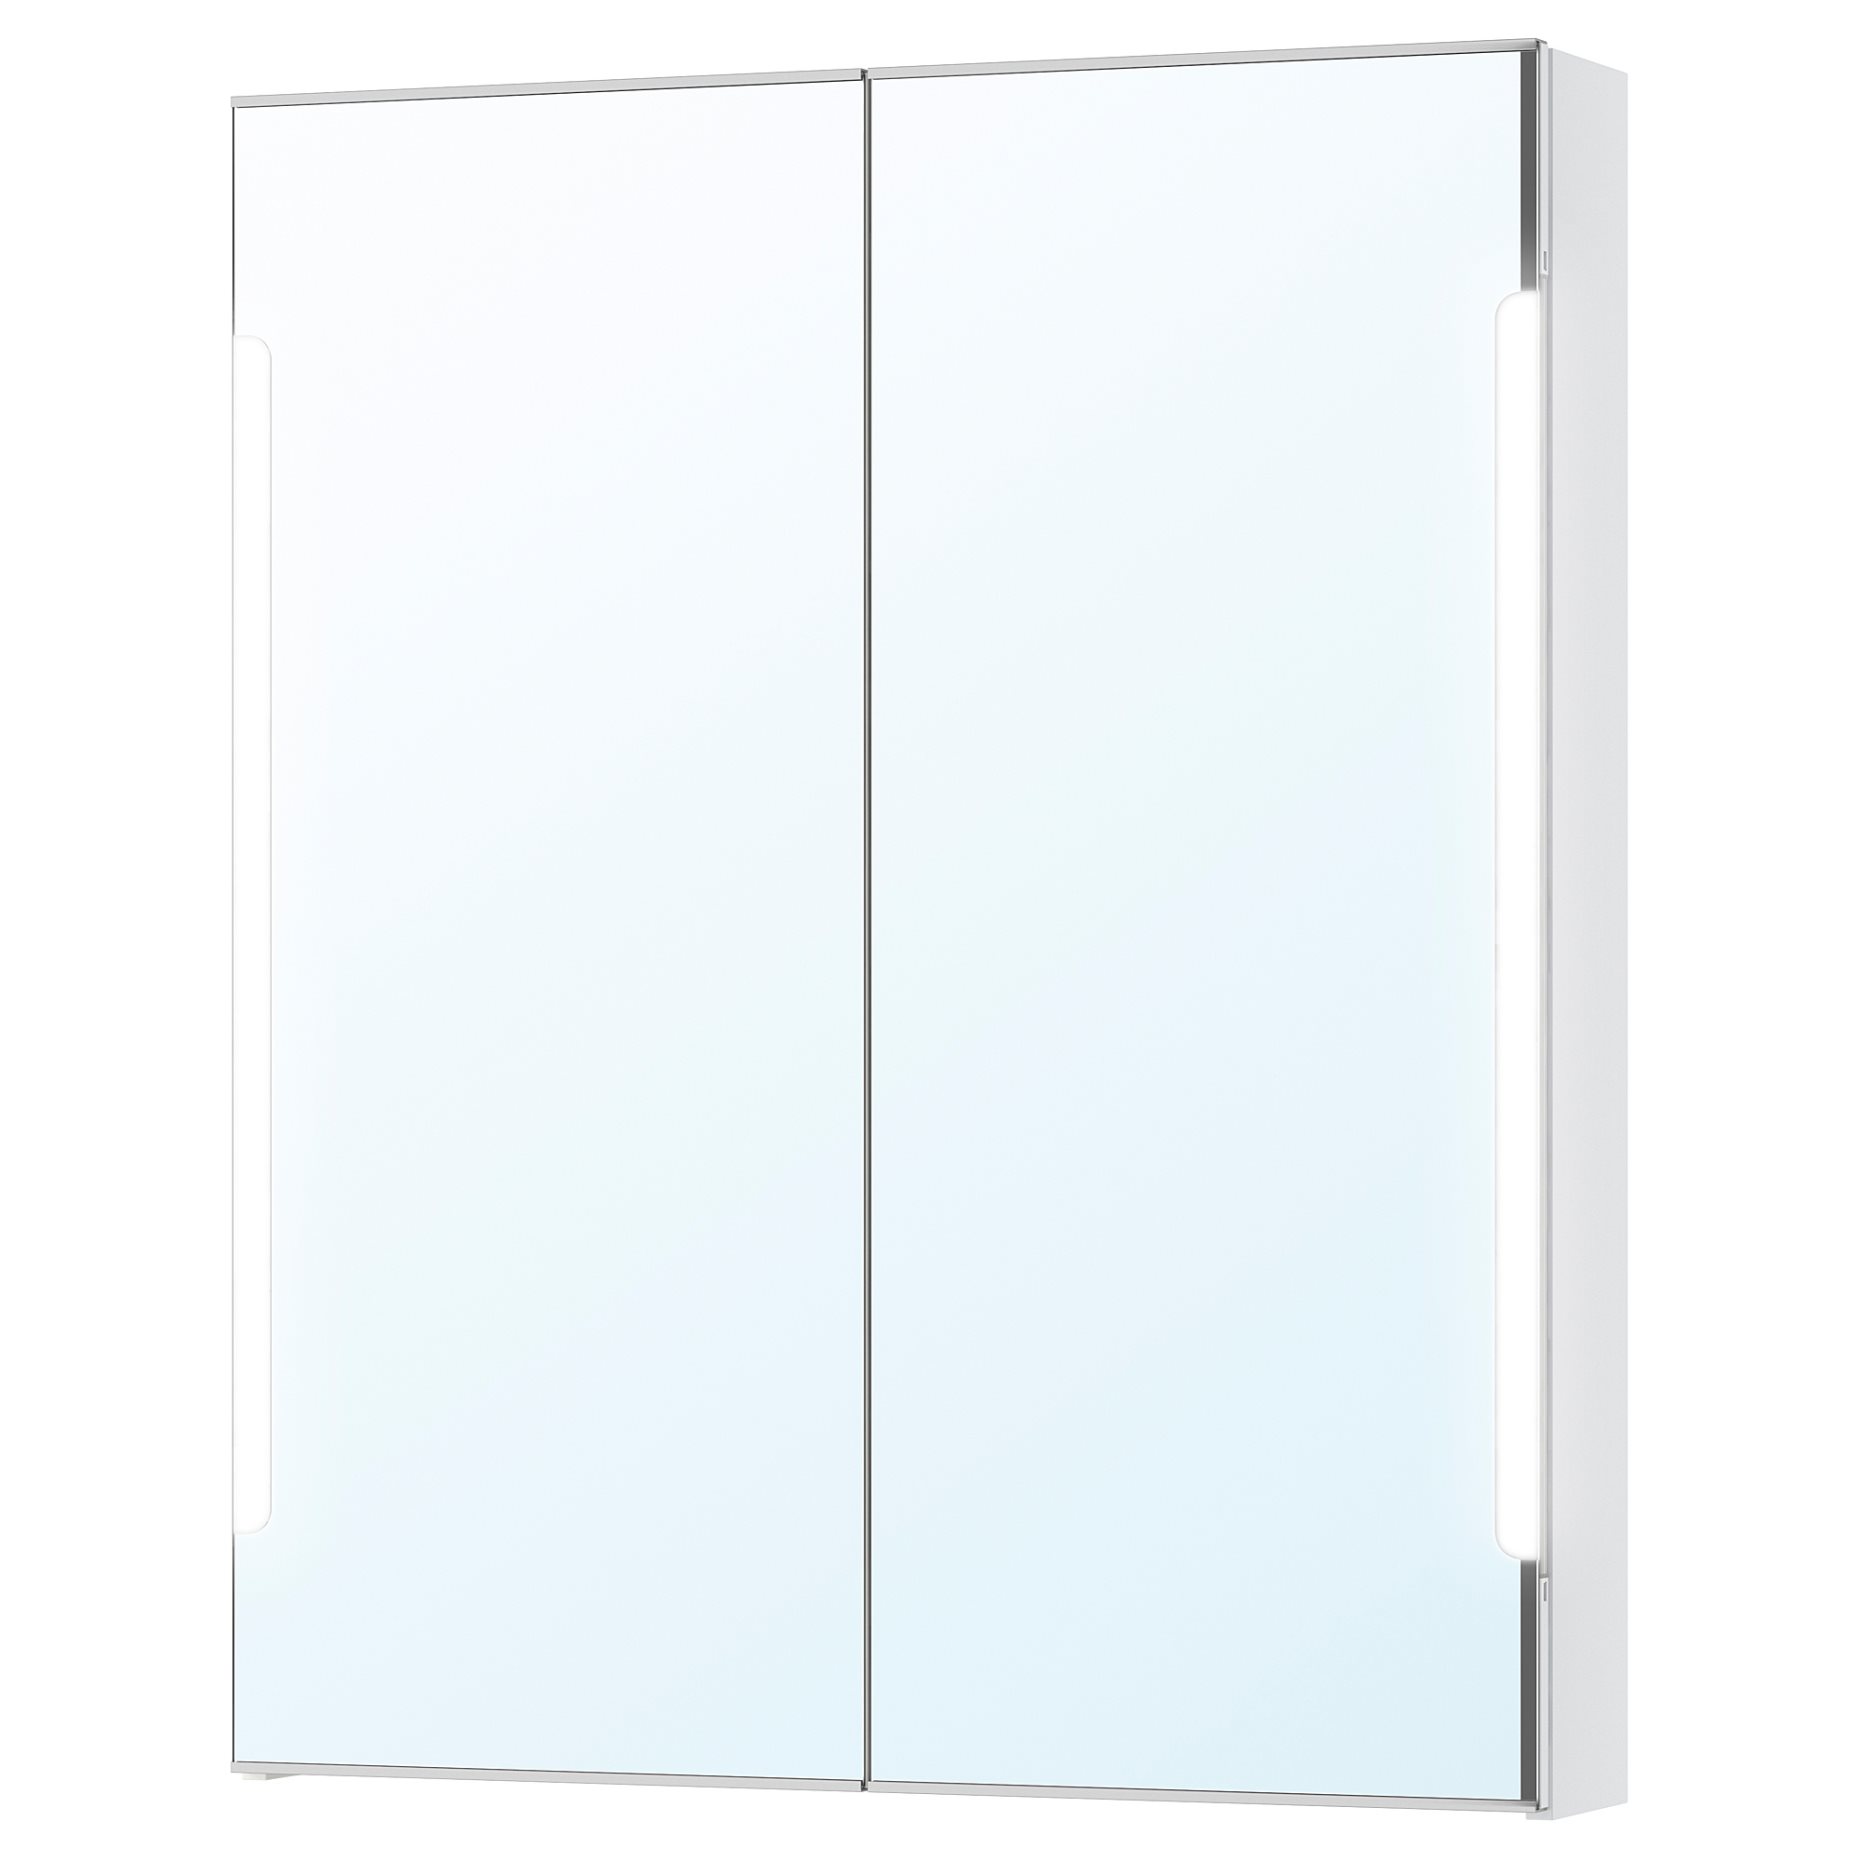 STORJORM, огледален шкаф с 2 врати/вградено осветление, 80x14x96 см, бяло, 202.481.23